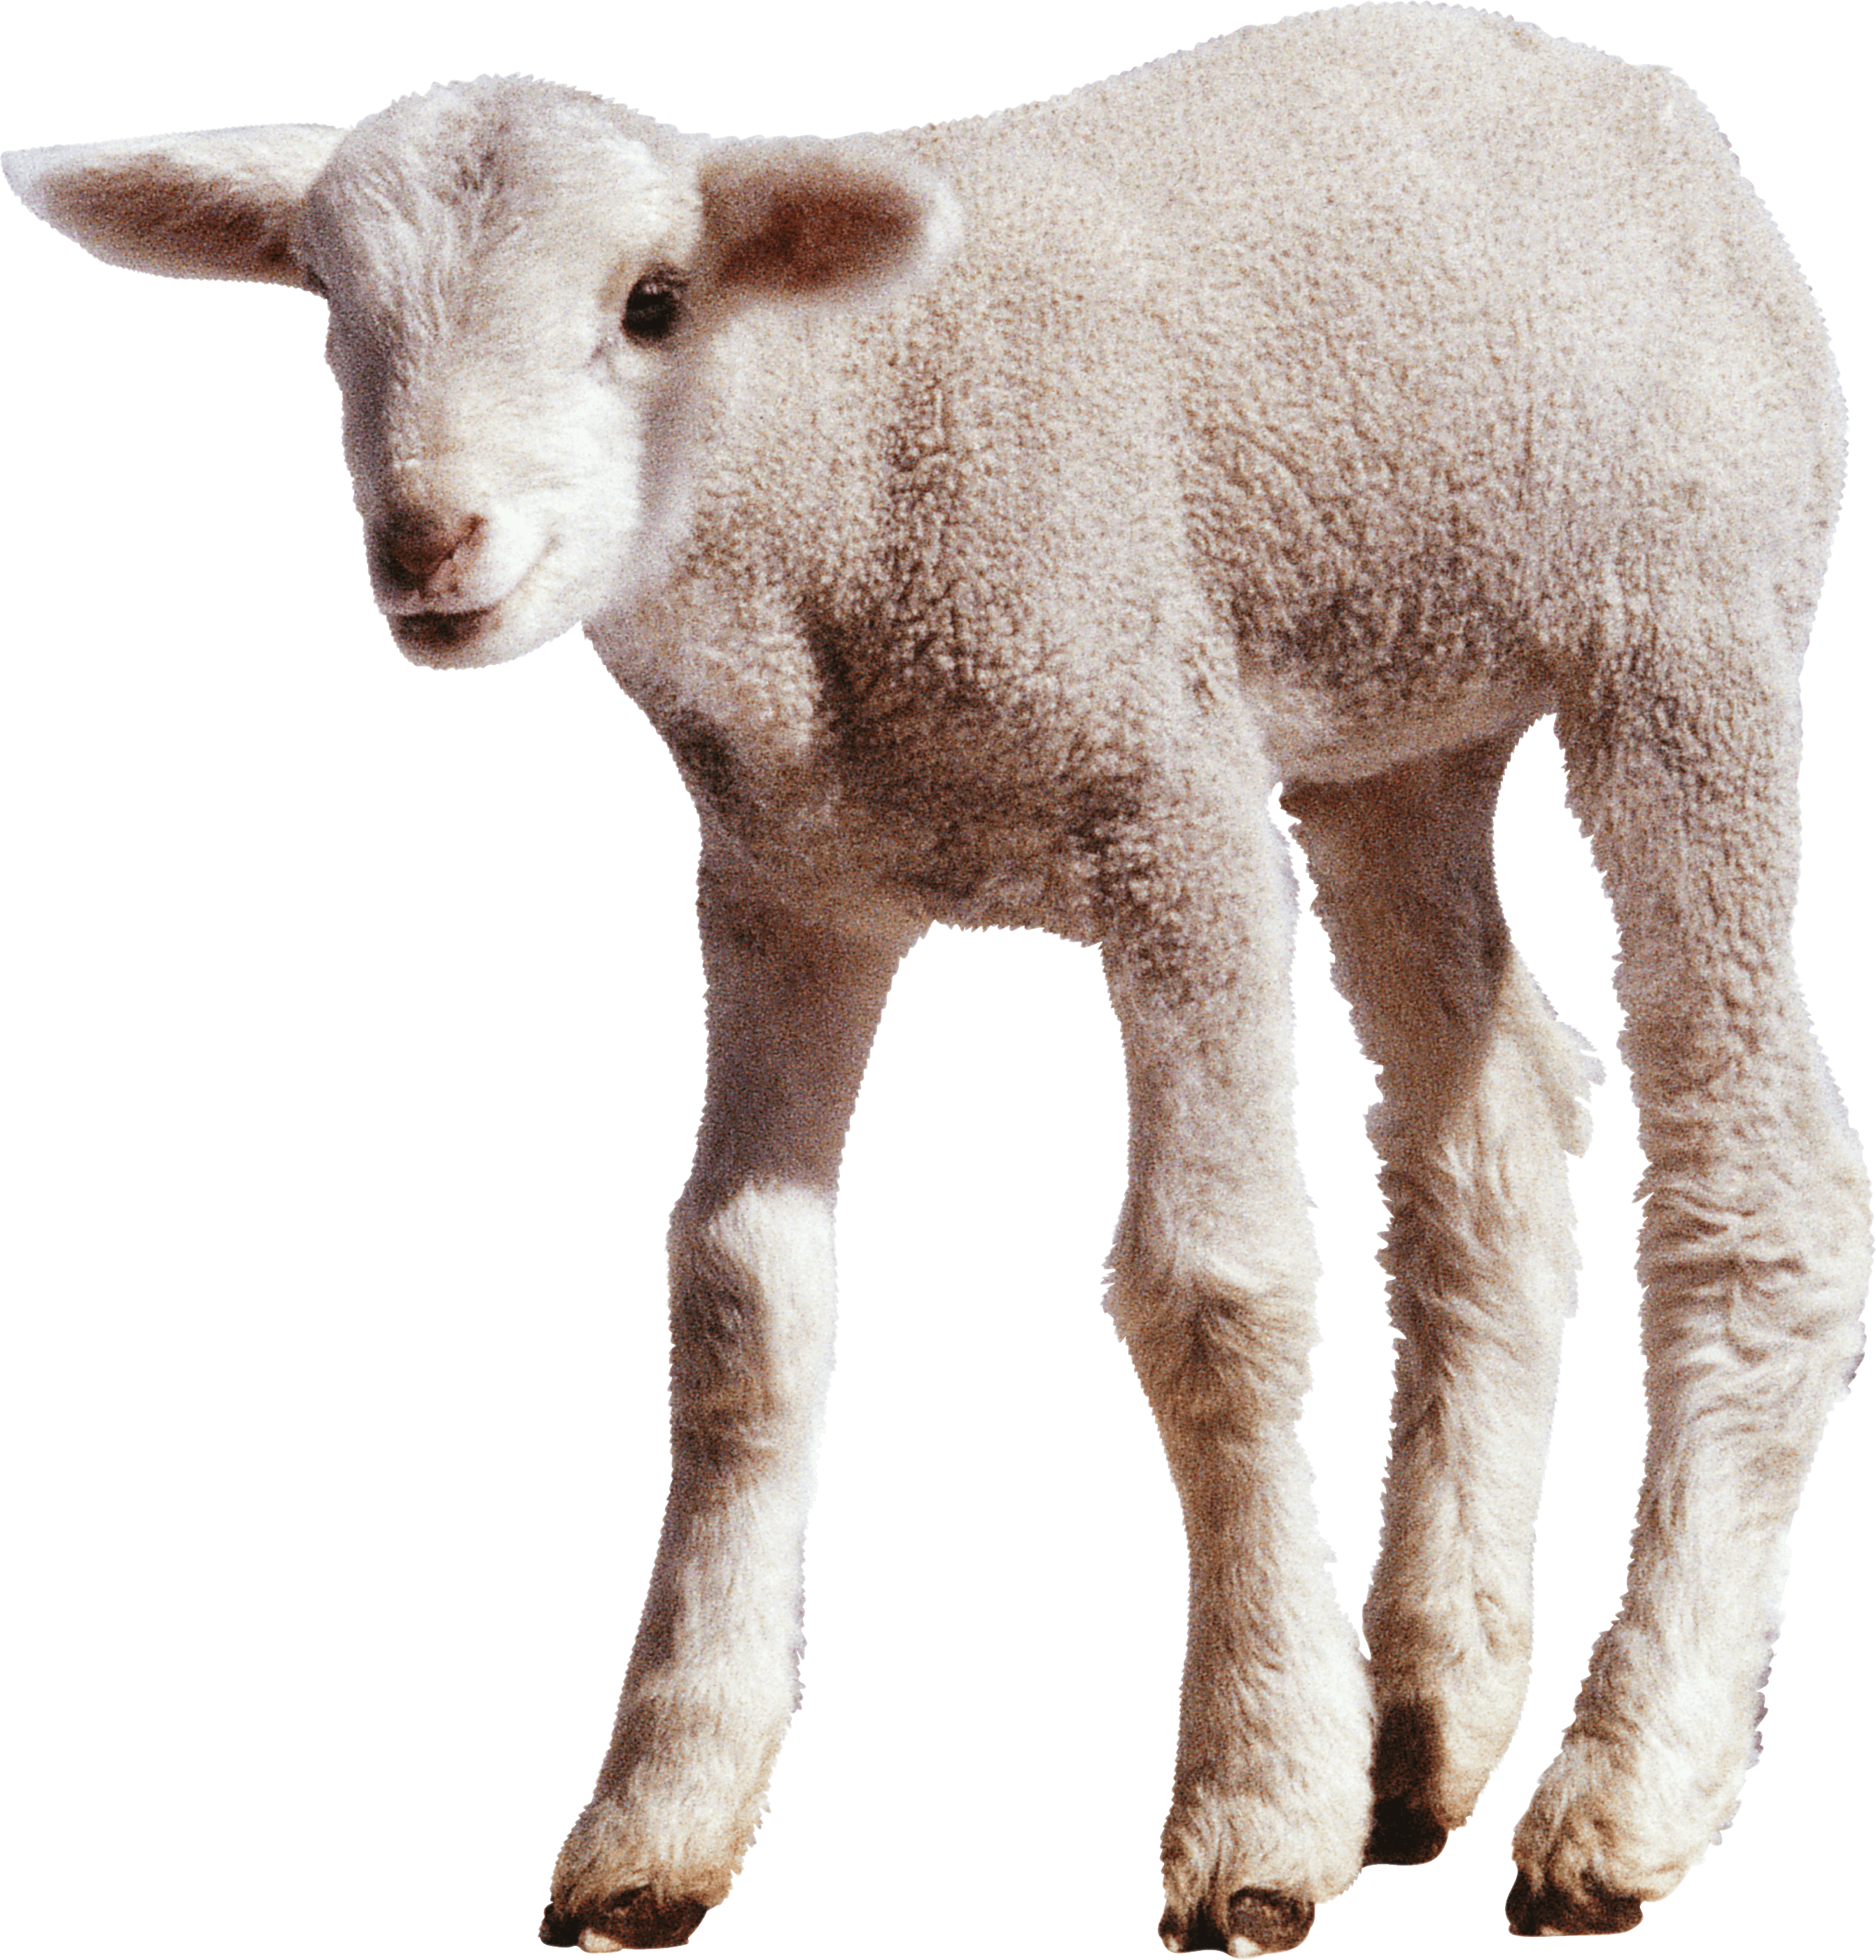 A Close Up Of A Lamb